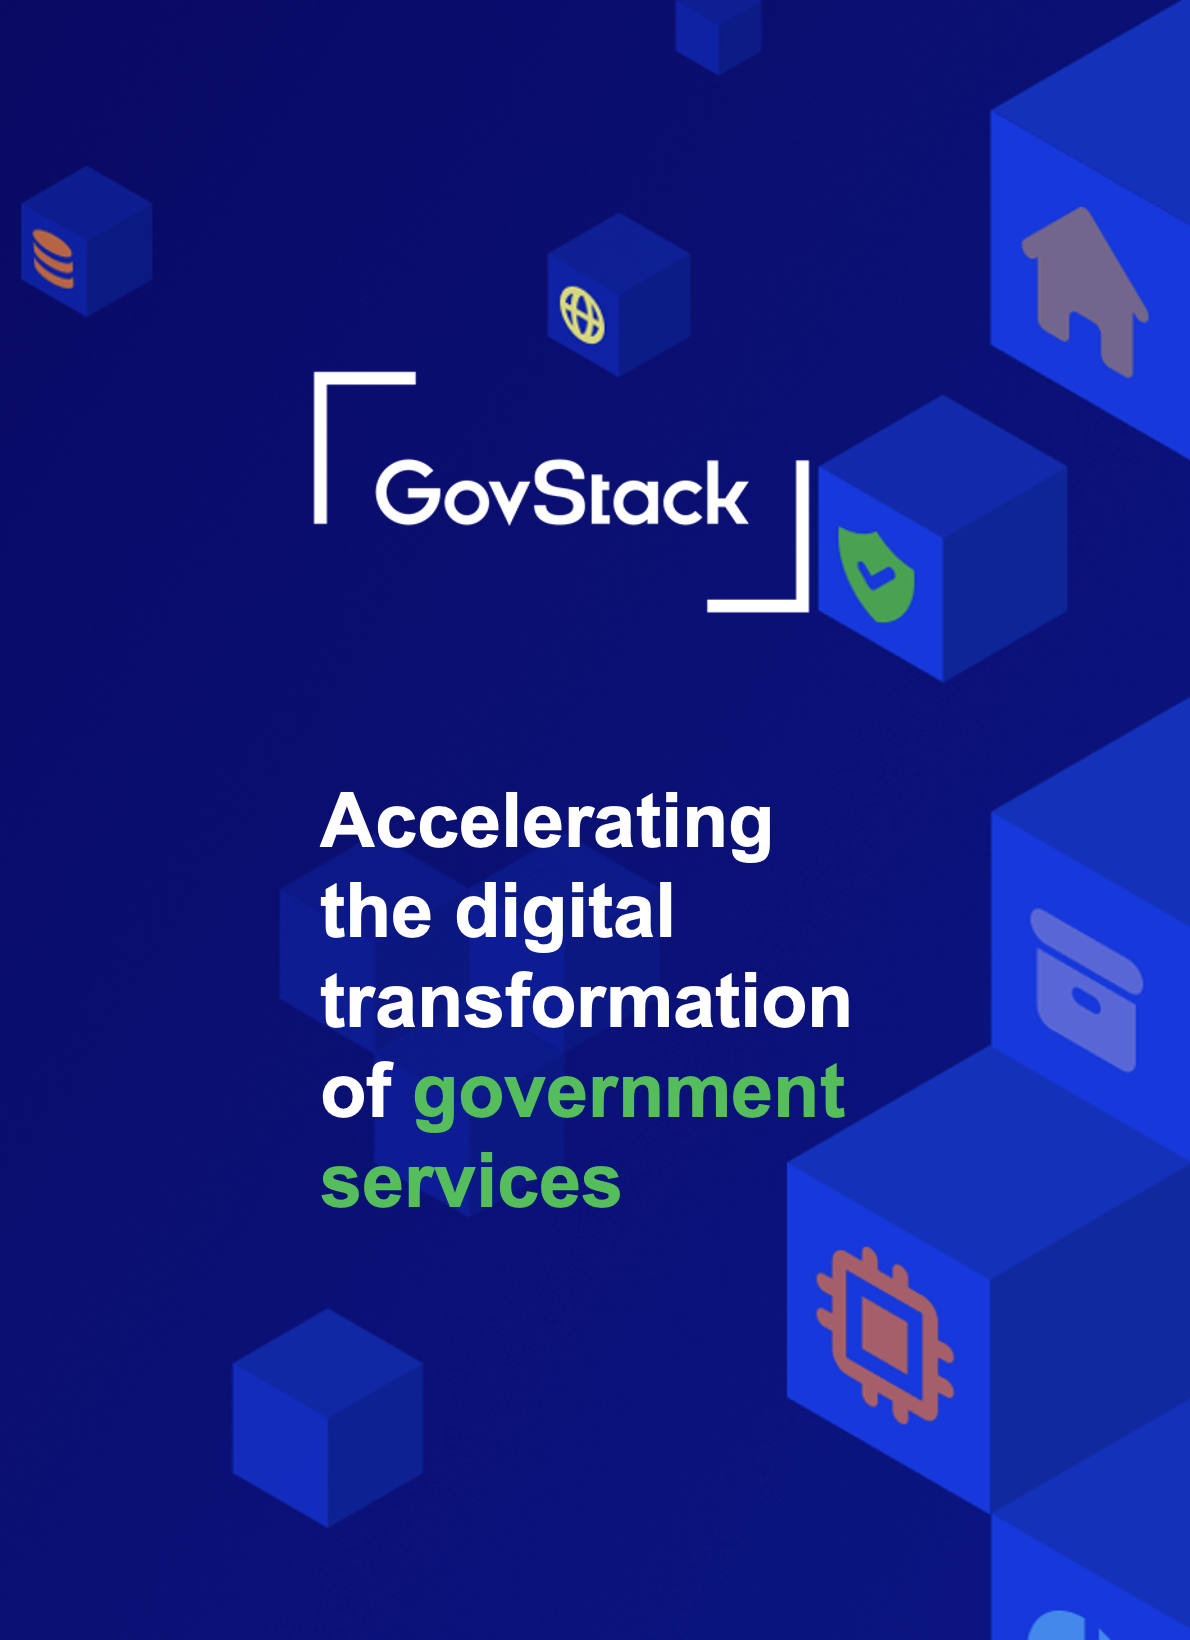 مبادرة GovStack تساعد الحكومات في بناء بنية تحتية رقمية مستدامة وتقديم خدمات رقمية محورها الإنسان. اكتشف كيفية الاستفادة والمساهمة!






